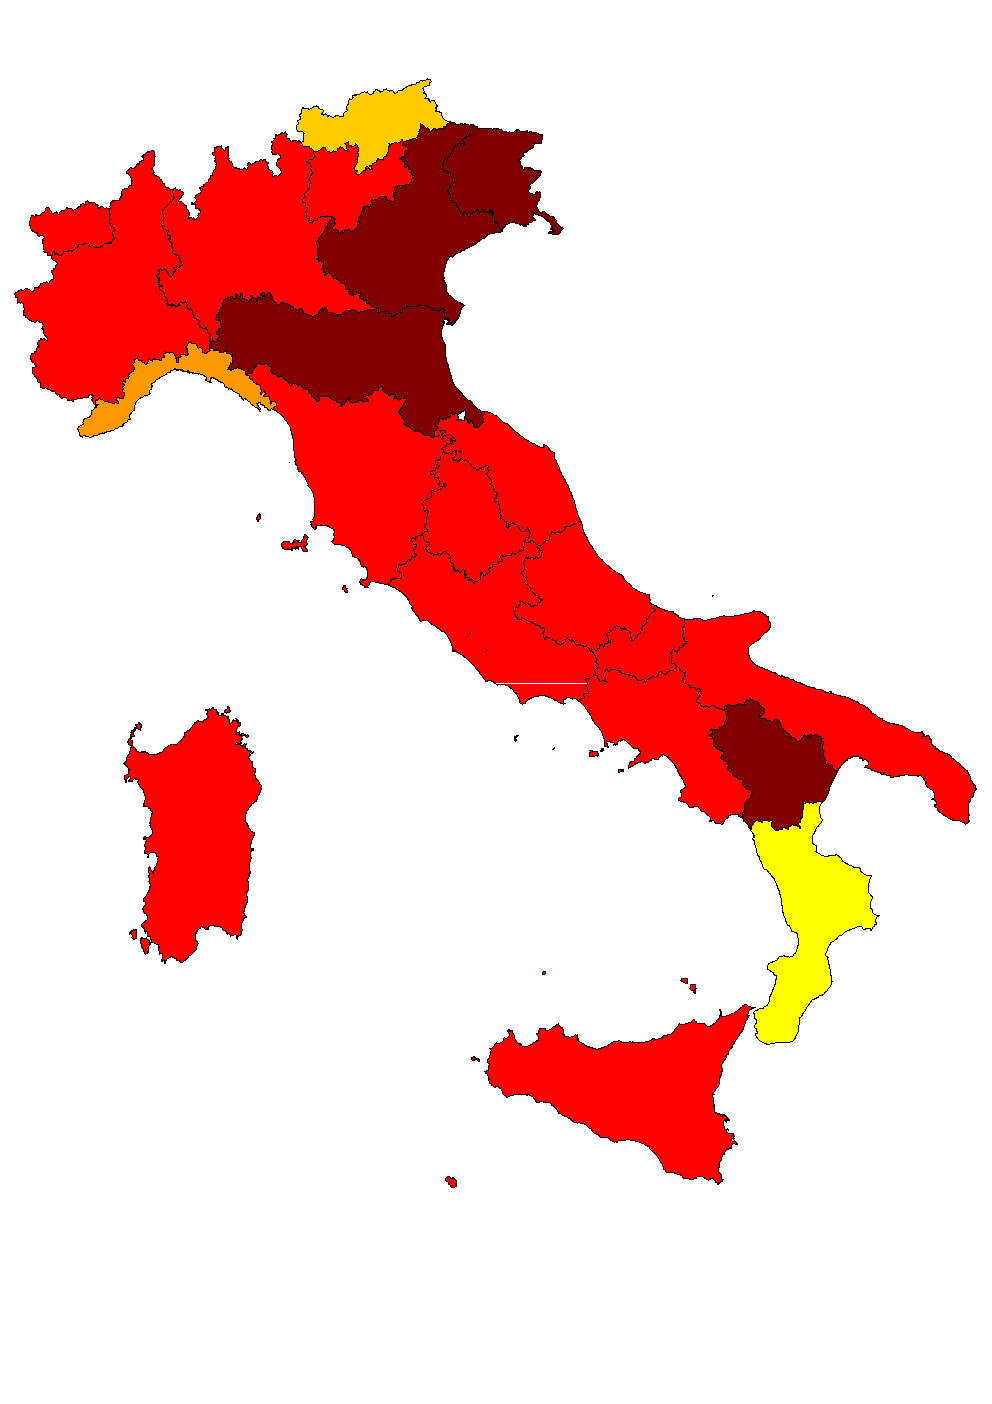 Gradiente geografico nella copertura vaccinale Copertura vaccinale per MPR (prima dose) al 24 mese, anno 2003 Liguria 79.1% <=60.